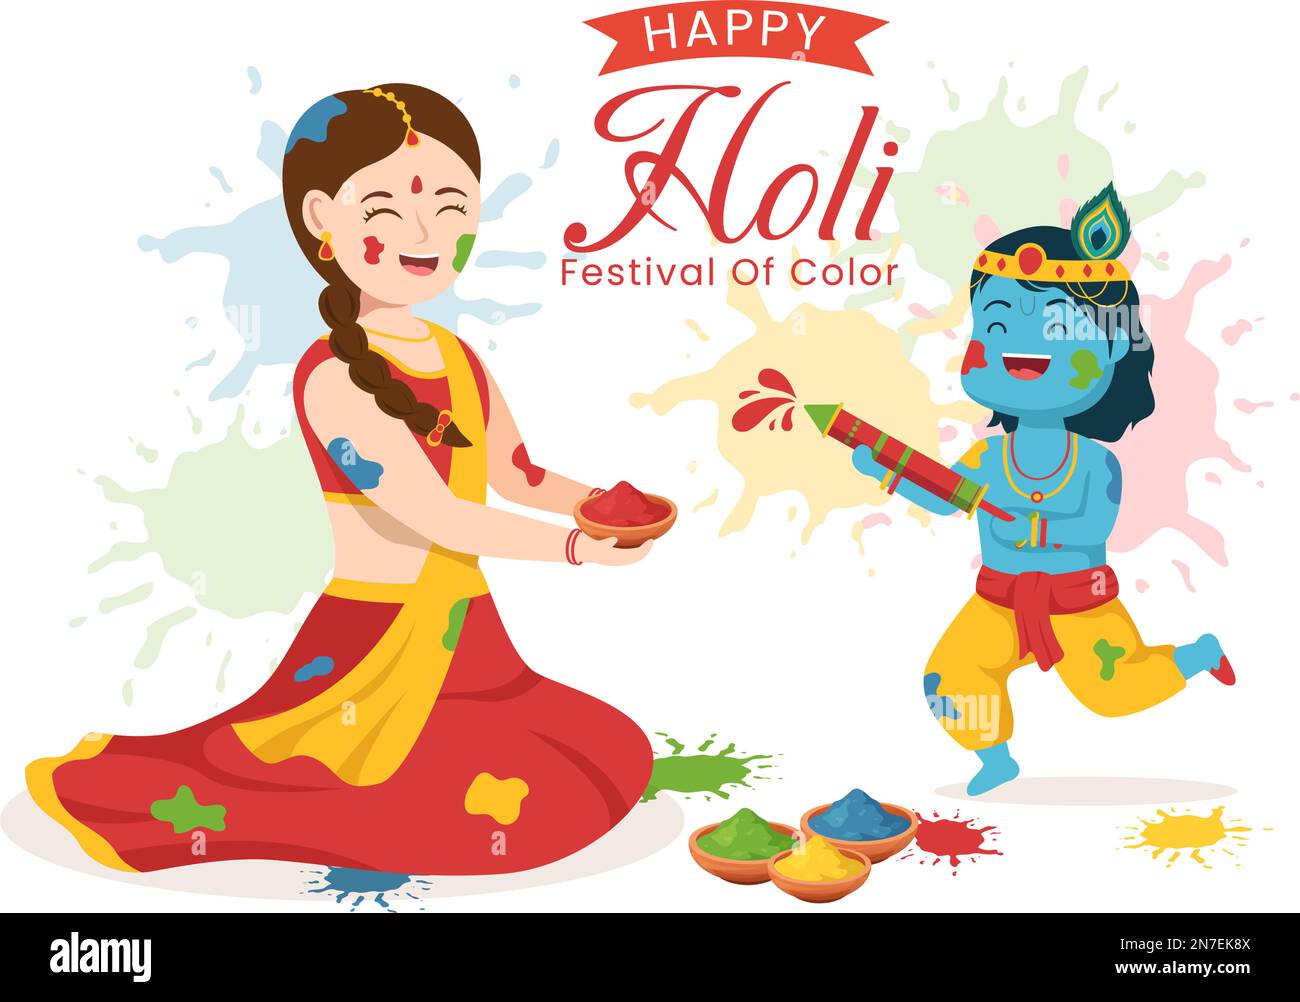 Happy Holi Festival Illustration mit farbenfrohem Töpfchen und Pulver in Hindi für Webbanner oder Landing Page in flachen, handgezeichneten Cartoon-Vorlagen Stock Vektor